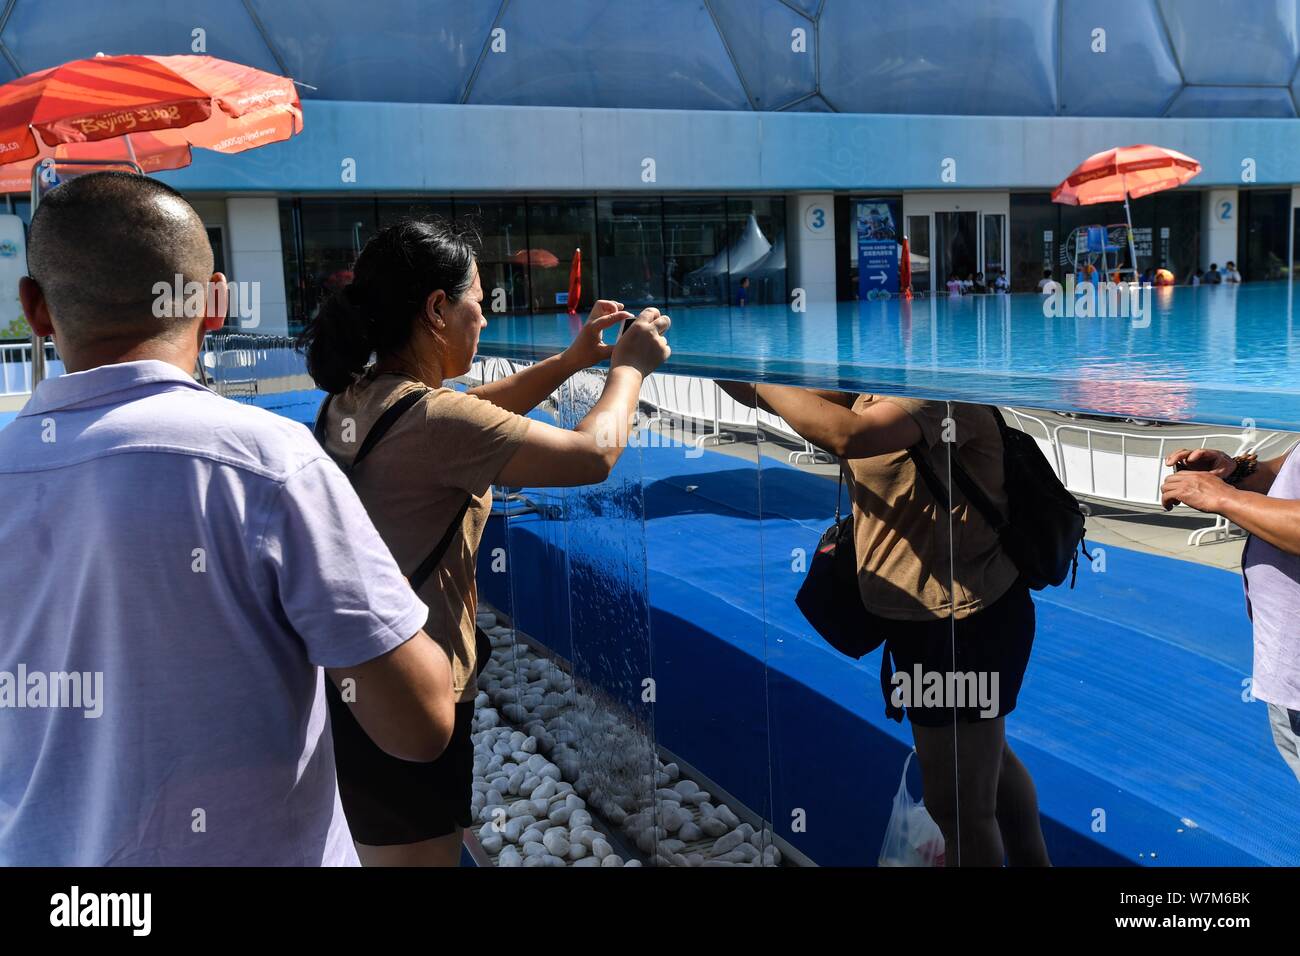 Die Besucher nehmen Fotos der 25 Meter lange und 15 Meter breite Infinity Pool neben dem China National Aquatics Centre, besser bekannt als "Water Cube", in Stockfoto